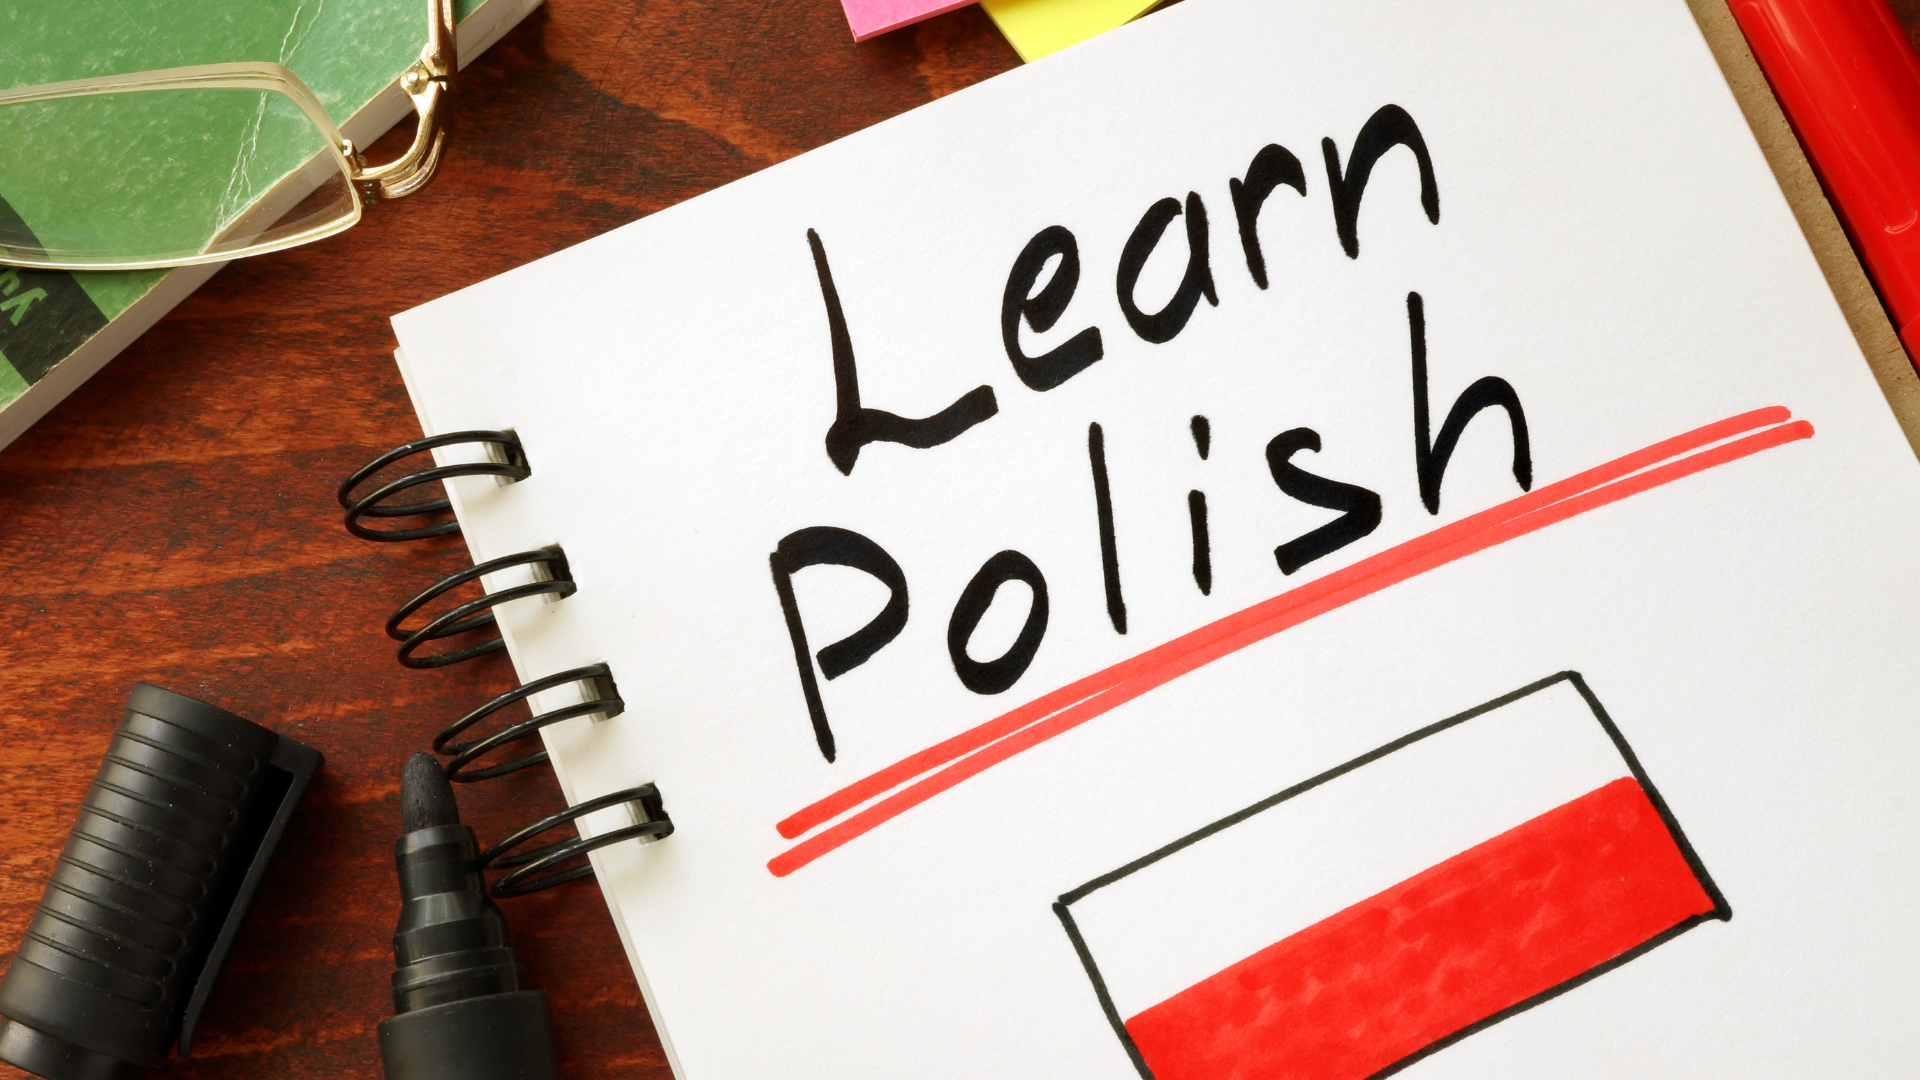 „W Gdańsku uczymy języka polskiego” – zaproszenie na bezpłatny kurs języka polskiego dla uchodźców